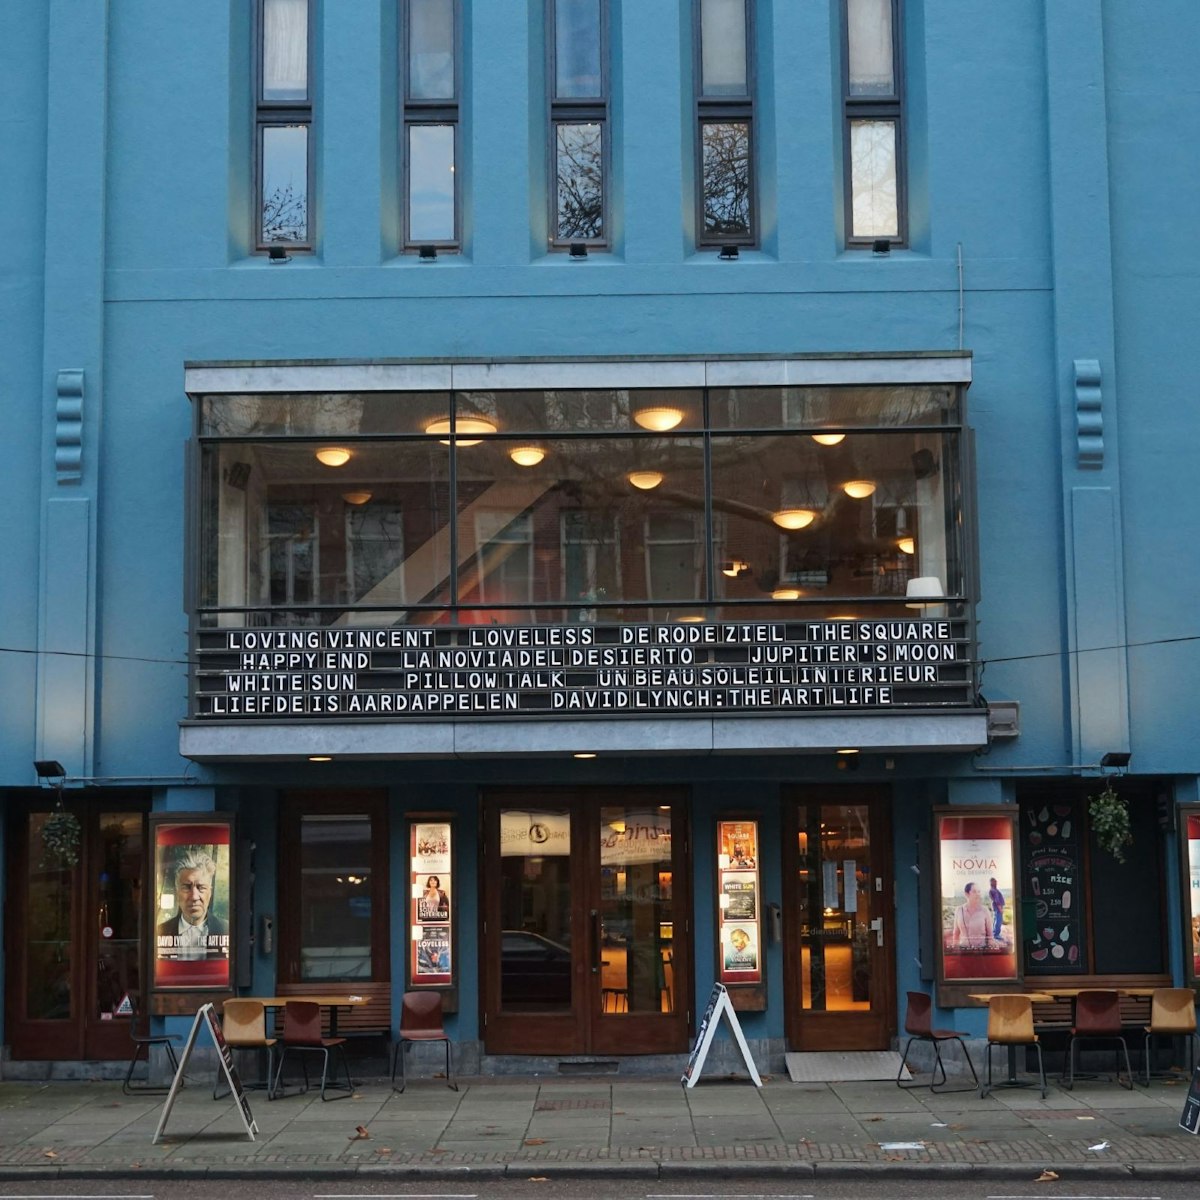 World films are shown at the attractive Rialto cinema, Amsterdam